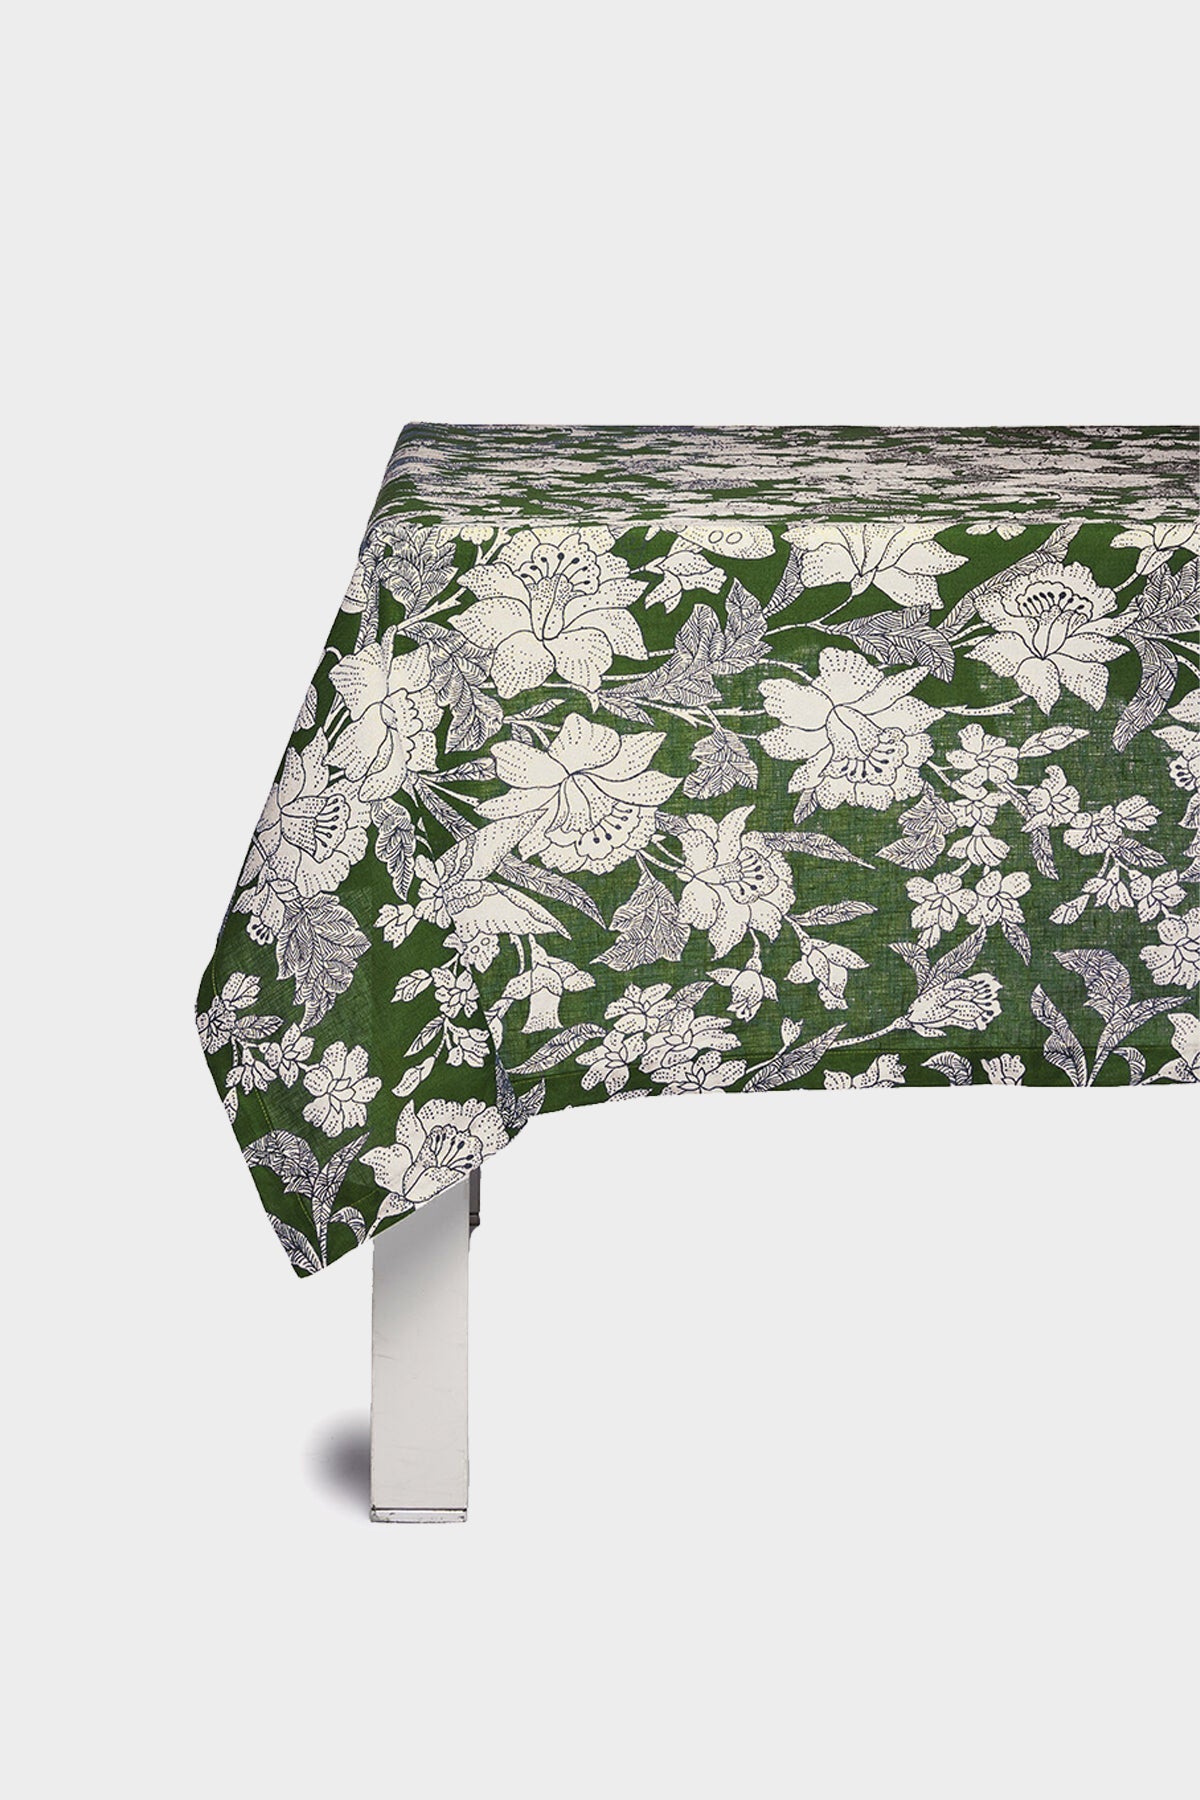 Medium Tablecloth (70in x 110in) in Lilium Avorio - shop-olivia.com